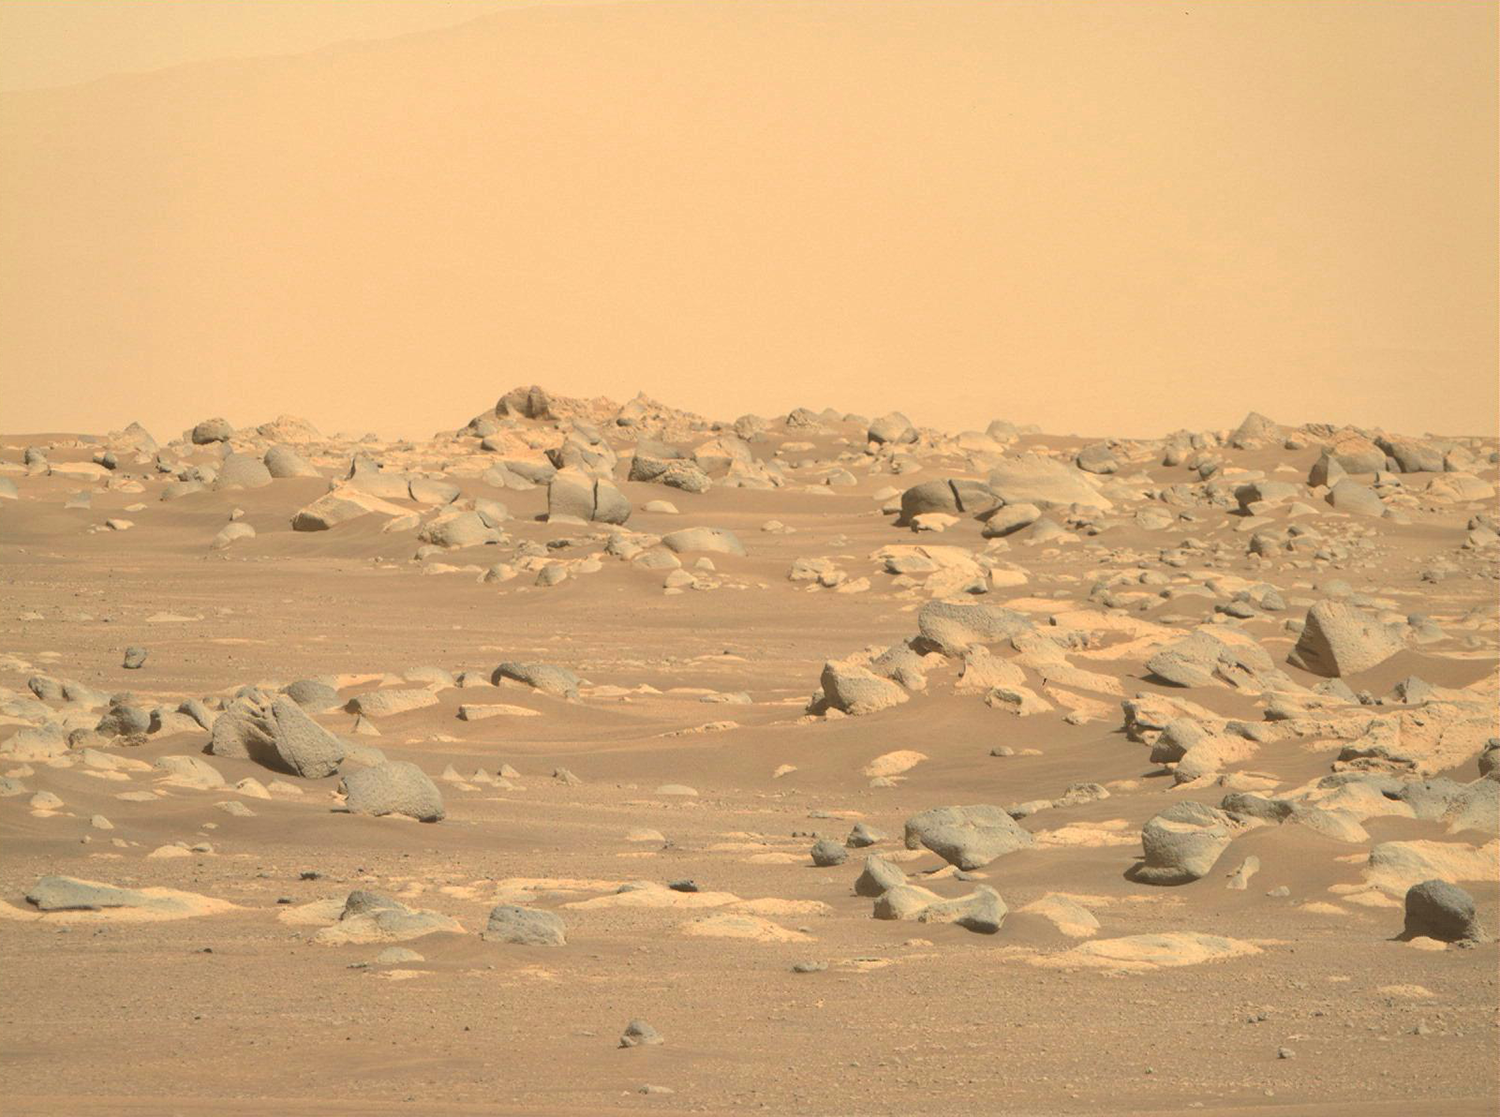 毅力号传回6千余张高清照火星上看太阳是啥样